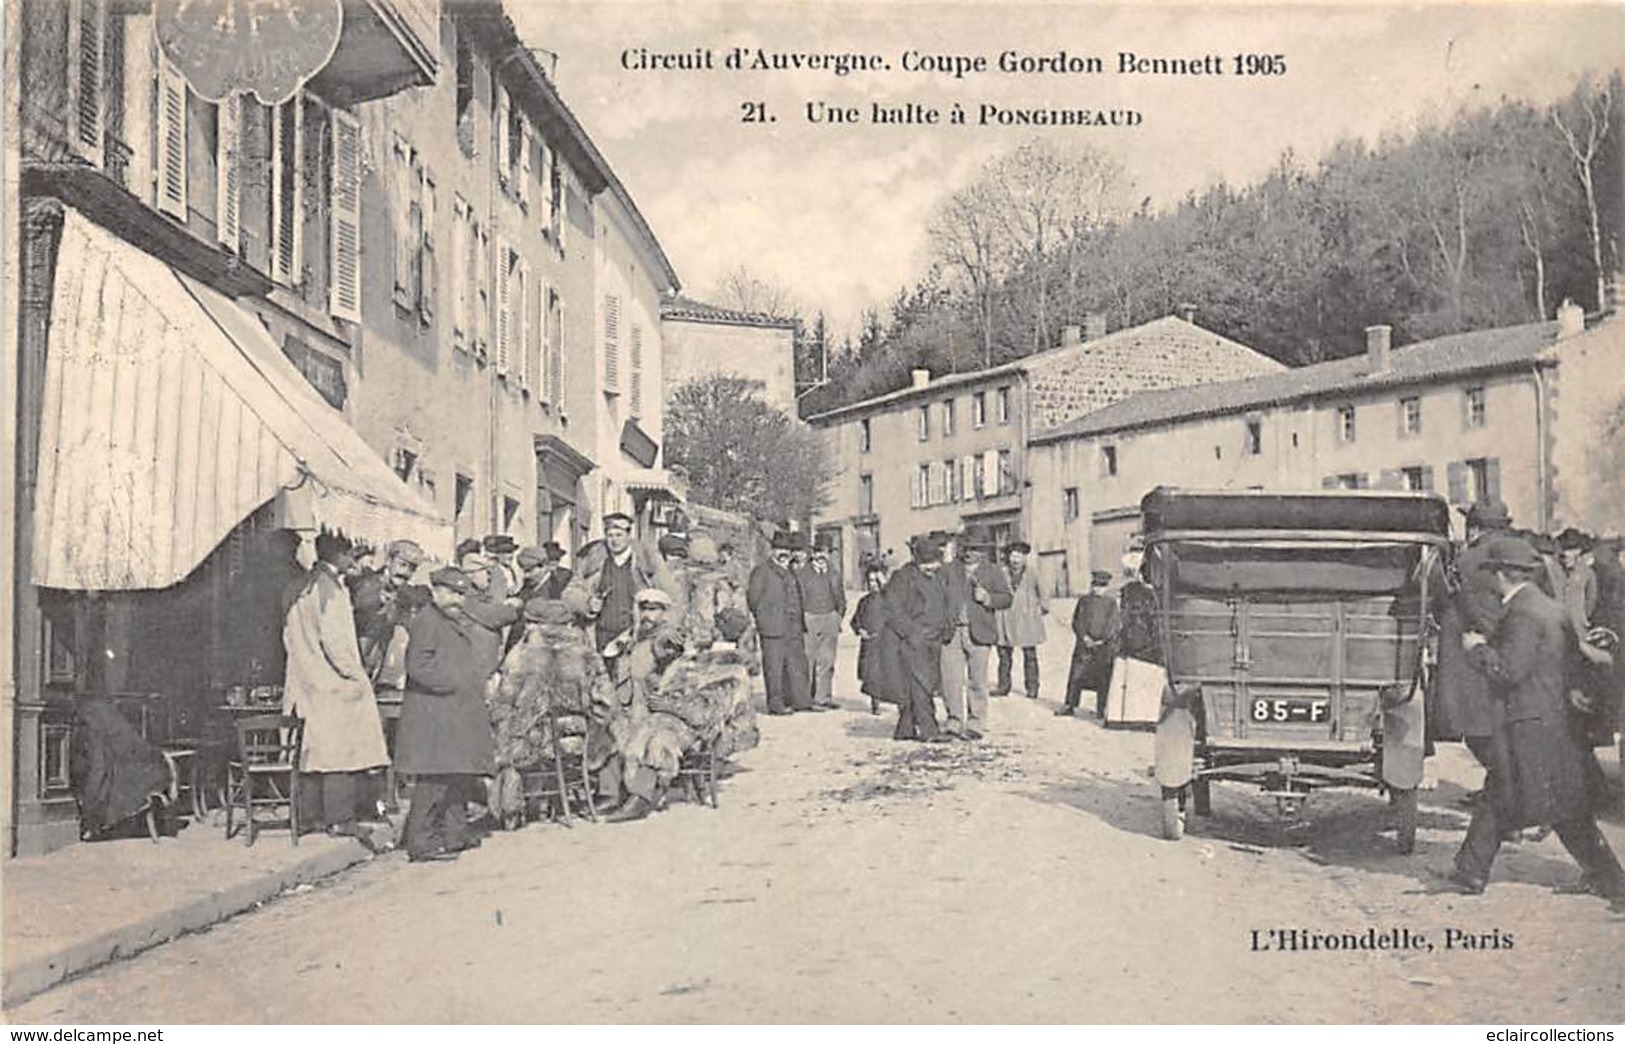 Thème:  Sport Automobile .Circuit d'Auvergne.Coupe Gordon Bennett 1905 . Ensemble de 7 cartes   (voir scan)